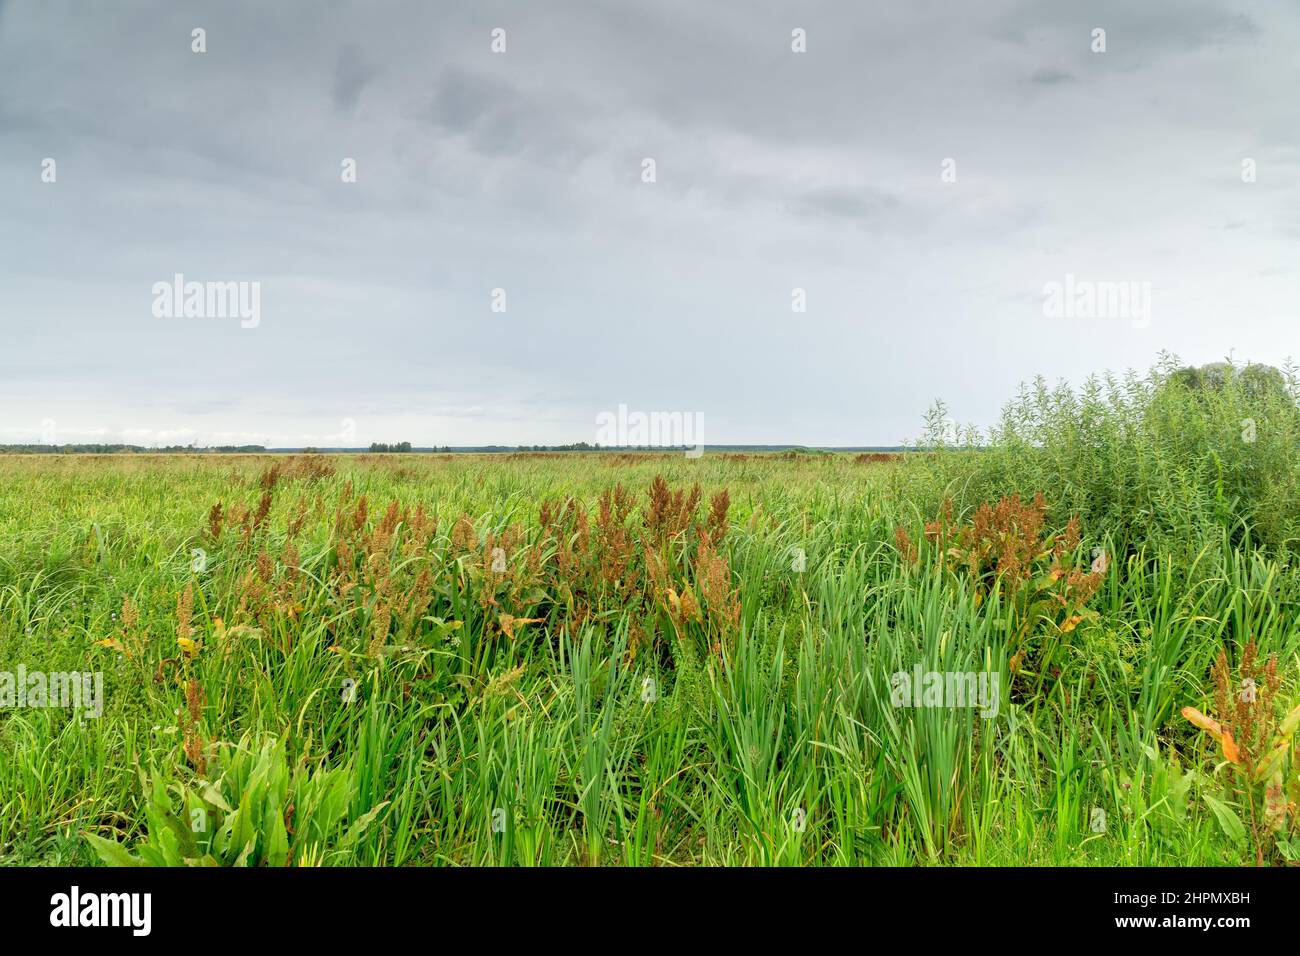 Landschaft des Biebrza-Nationalparks, Feuchtgebiete, Wiesen, Sommer, helliger Himmel. Woiwodschaft Podlachien, Polen. Stockfoto